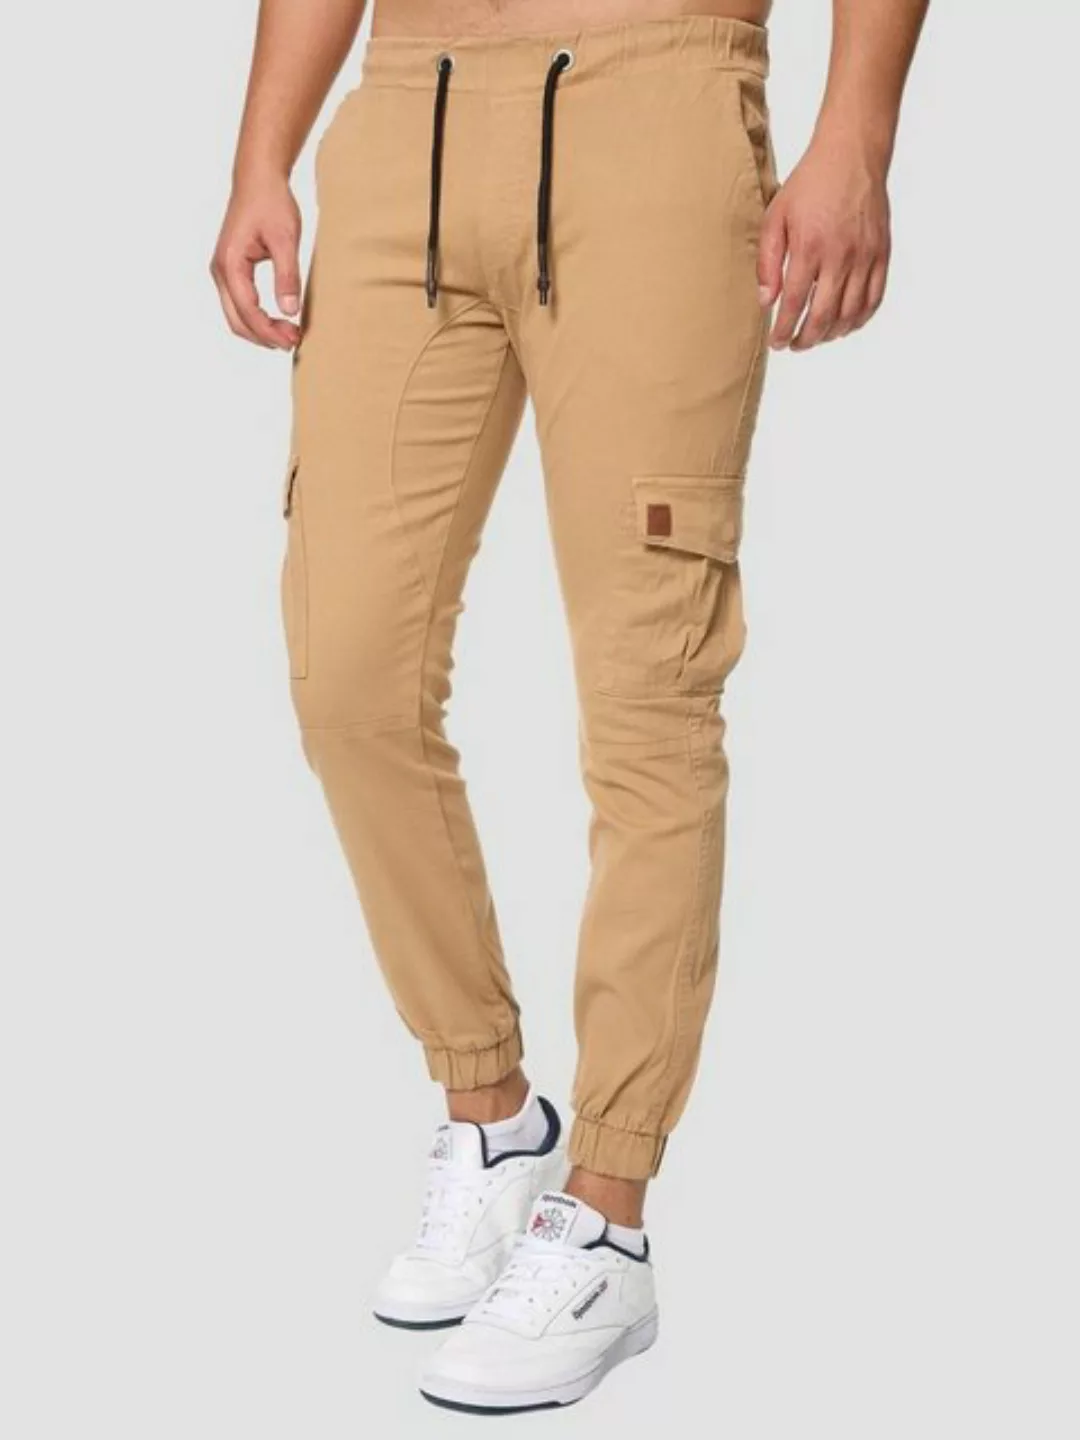 John Kayna Bequeme Jeans Herren Cargo Hose Slim Fit Utility Jeans Männer Ch günstig online kaufen